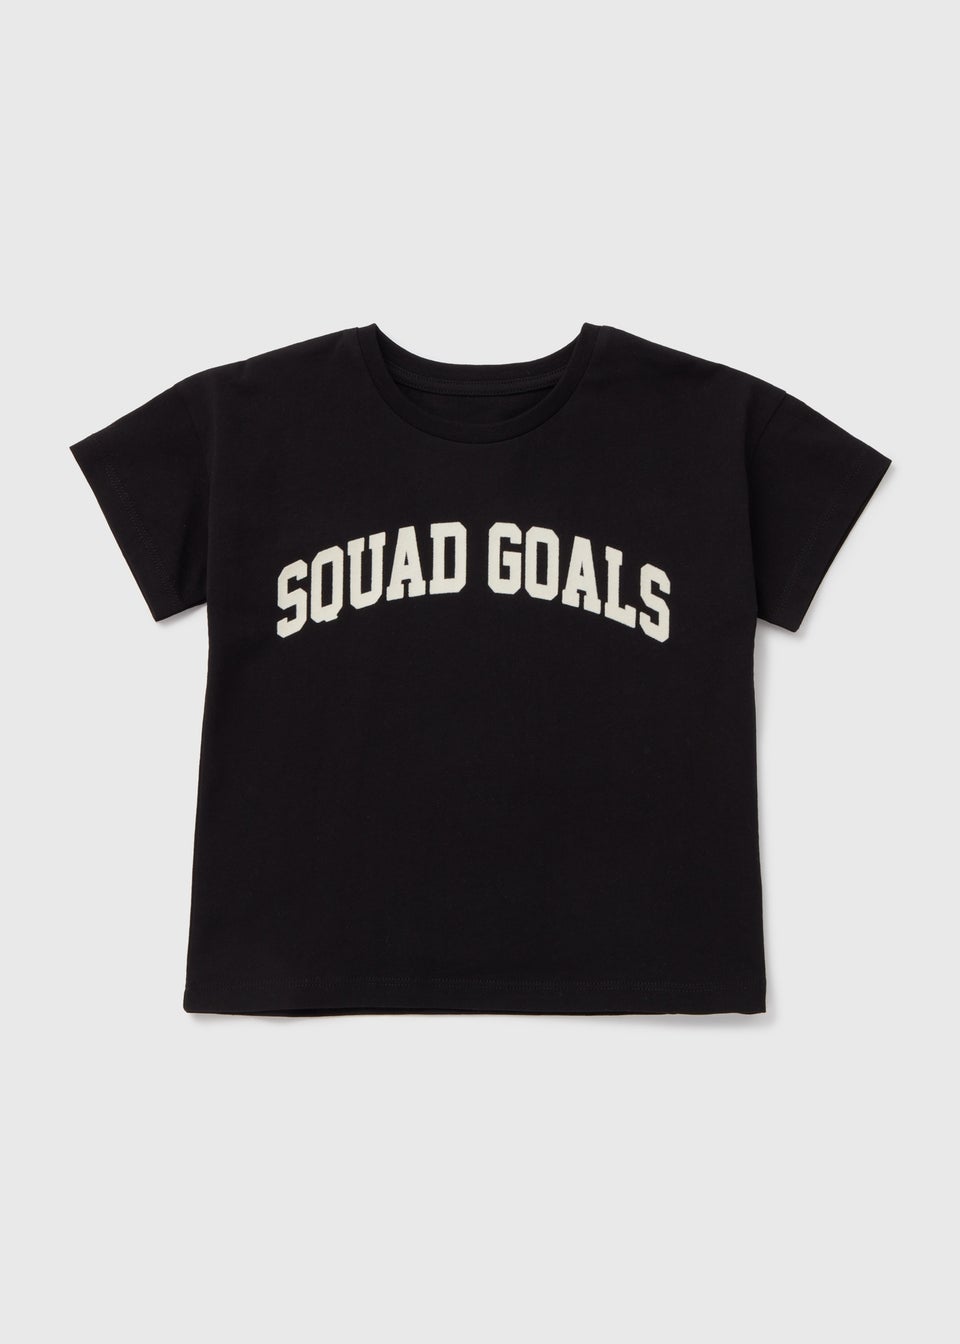 Черная футболка Squad Goals для девочек (1–7 лет)